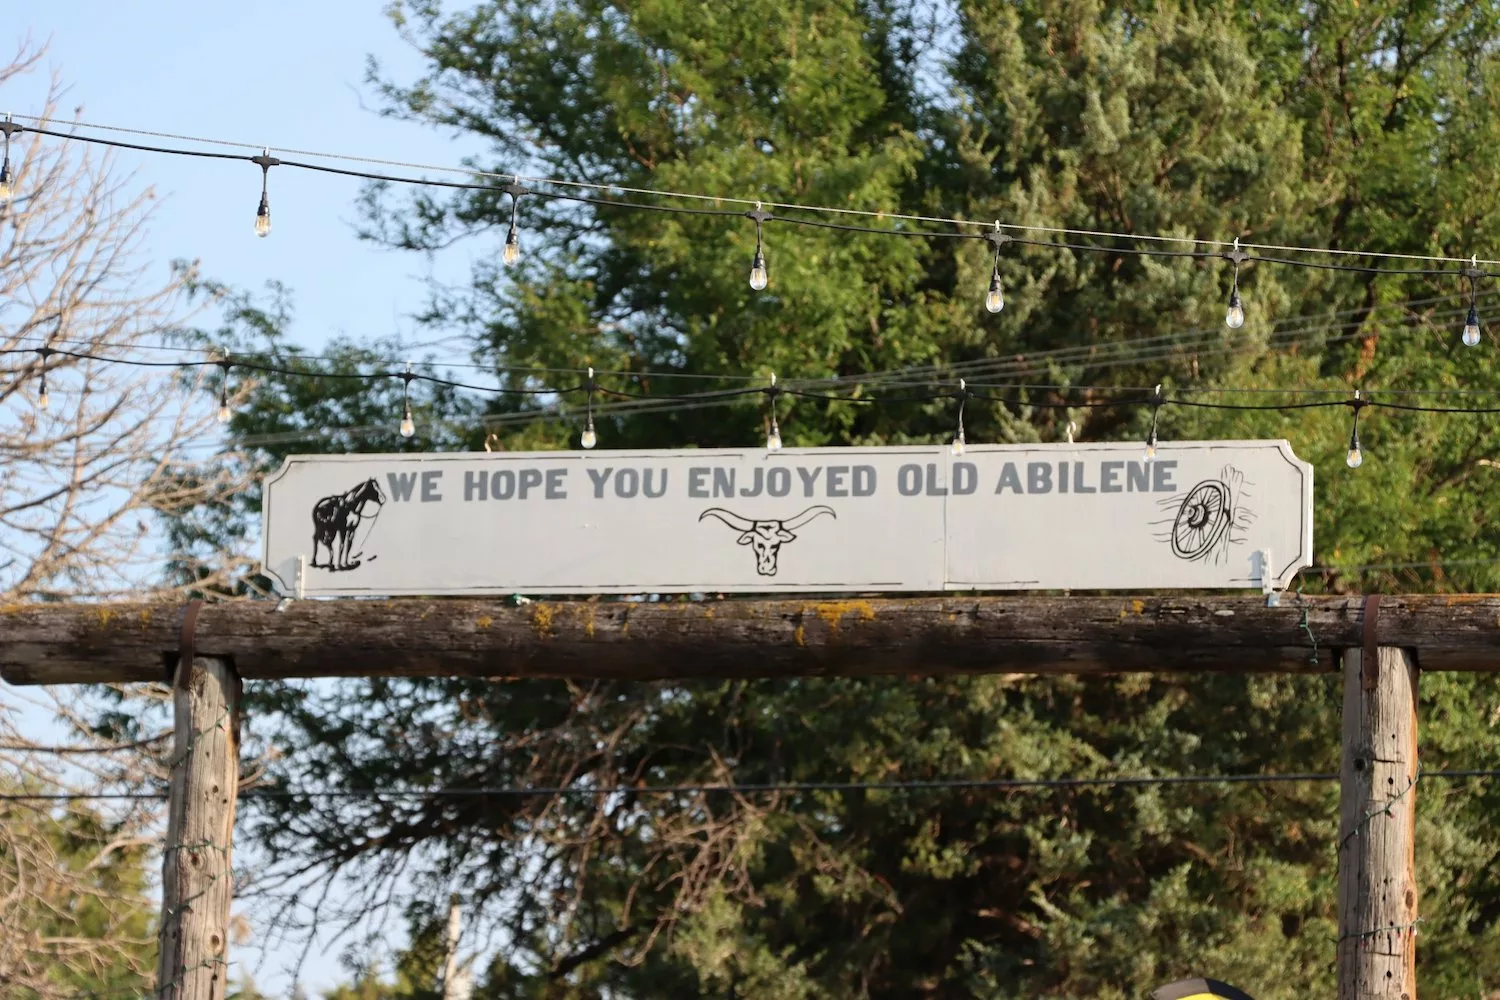 "We hope you enjoyed Old Abilene" sign at at Old Abilene Town in Abilene, Kansas